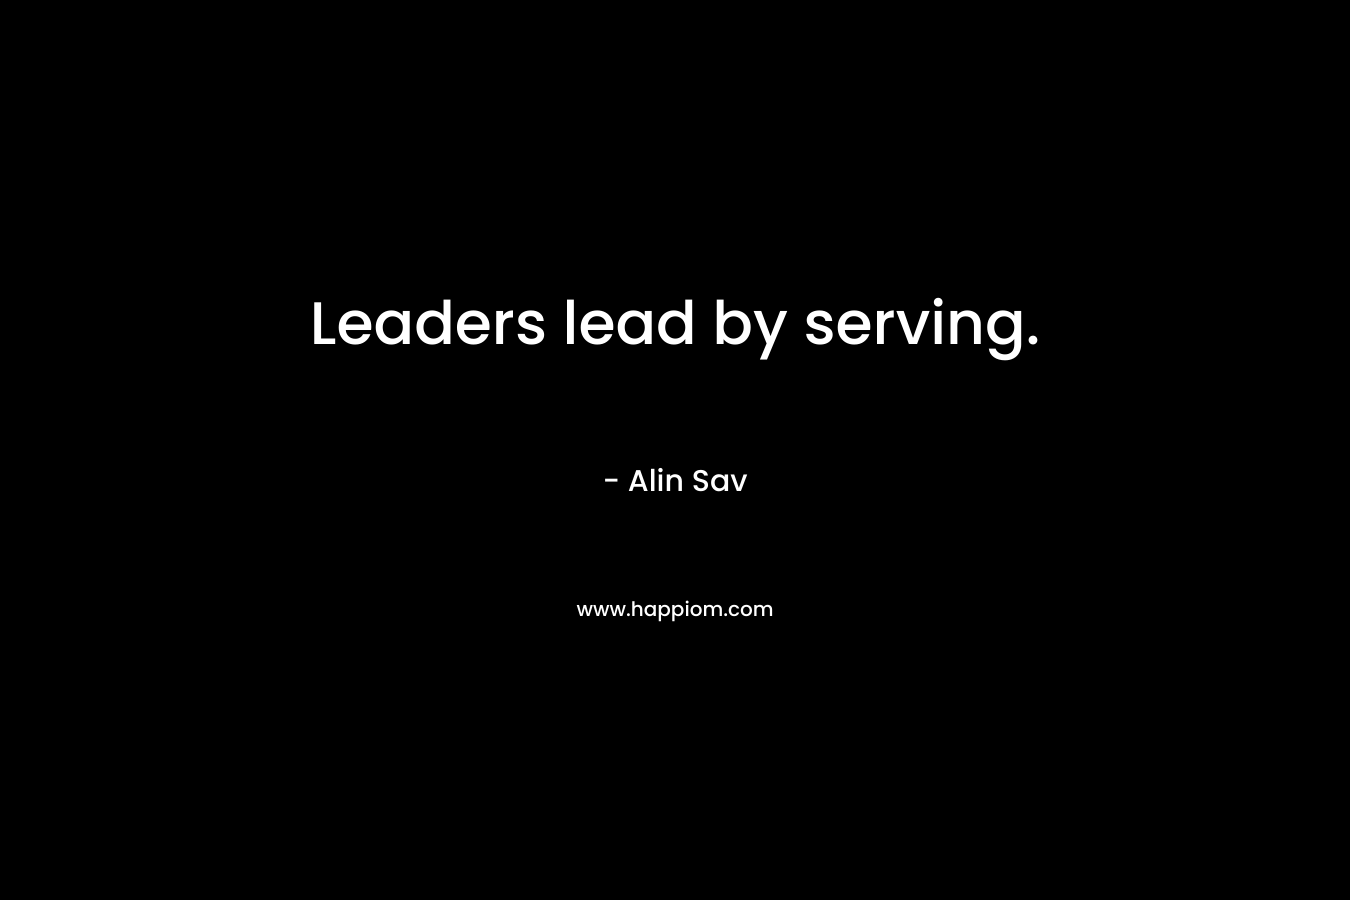 Leaders lead by serving.